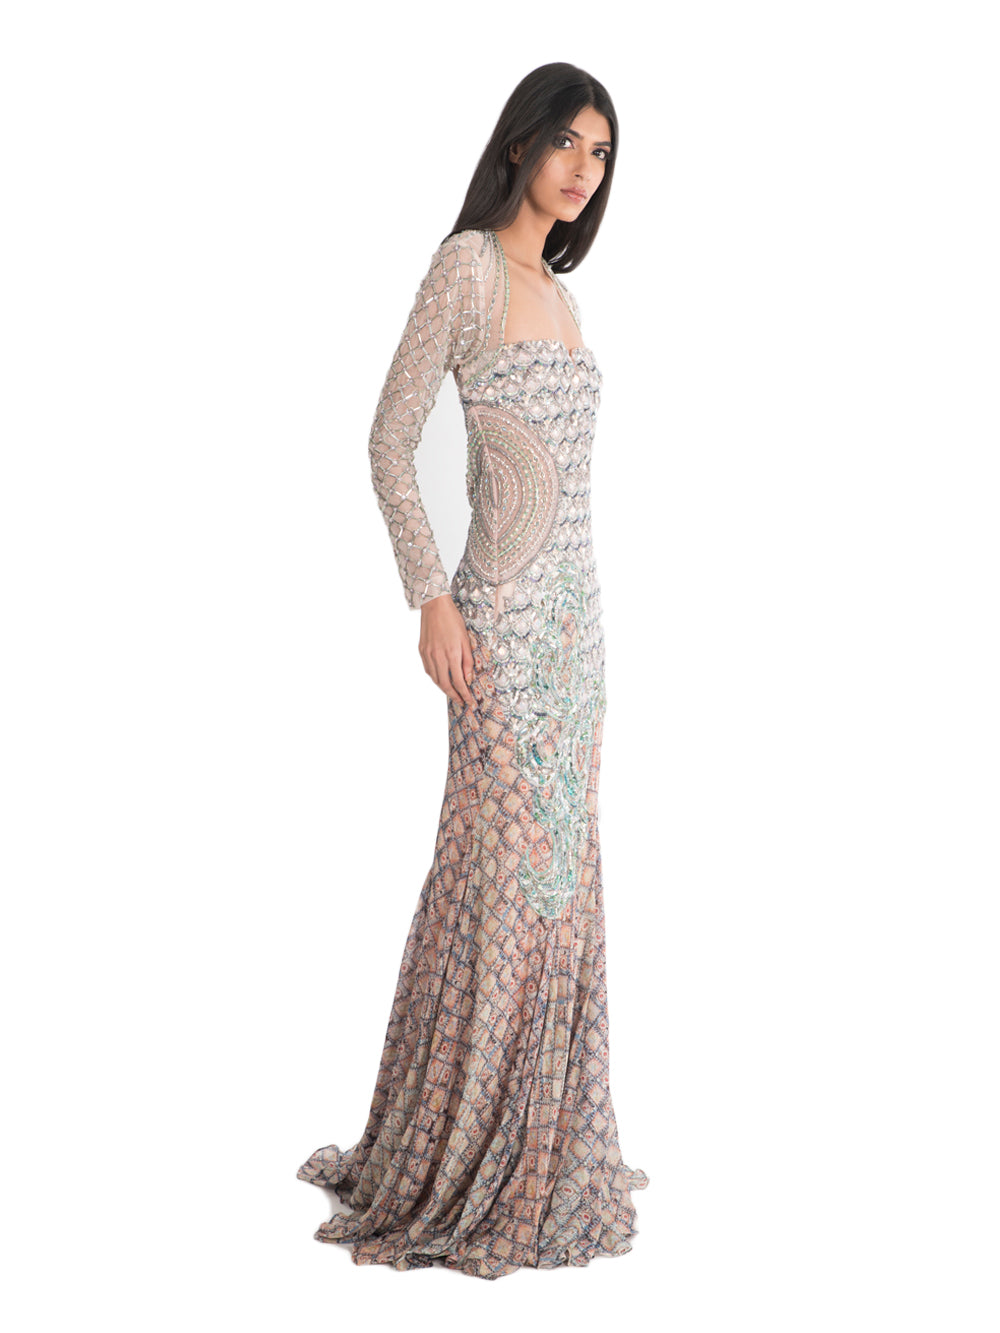 Seaqua Gown